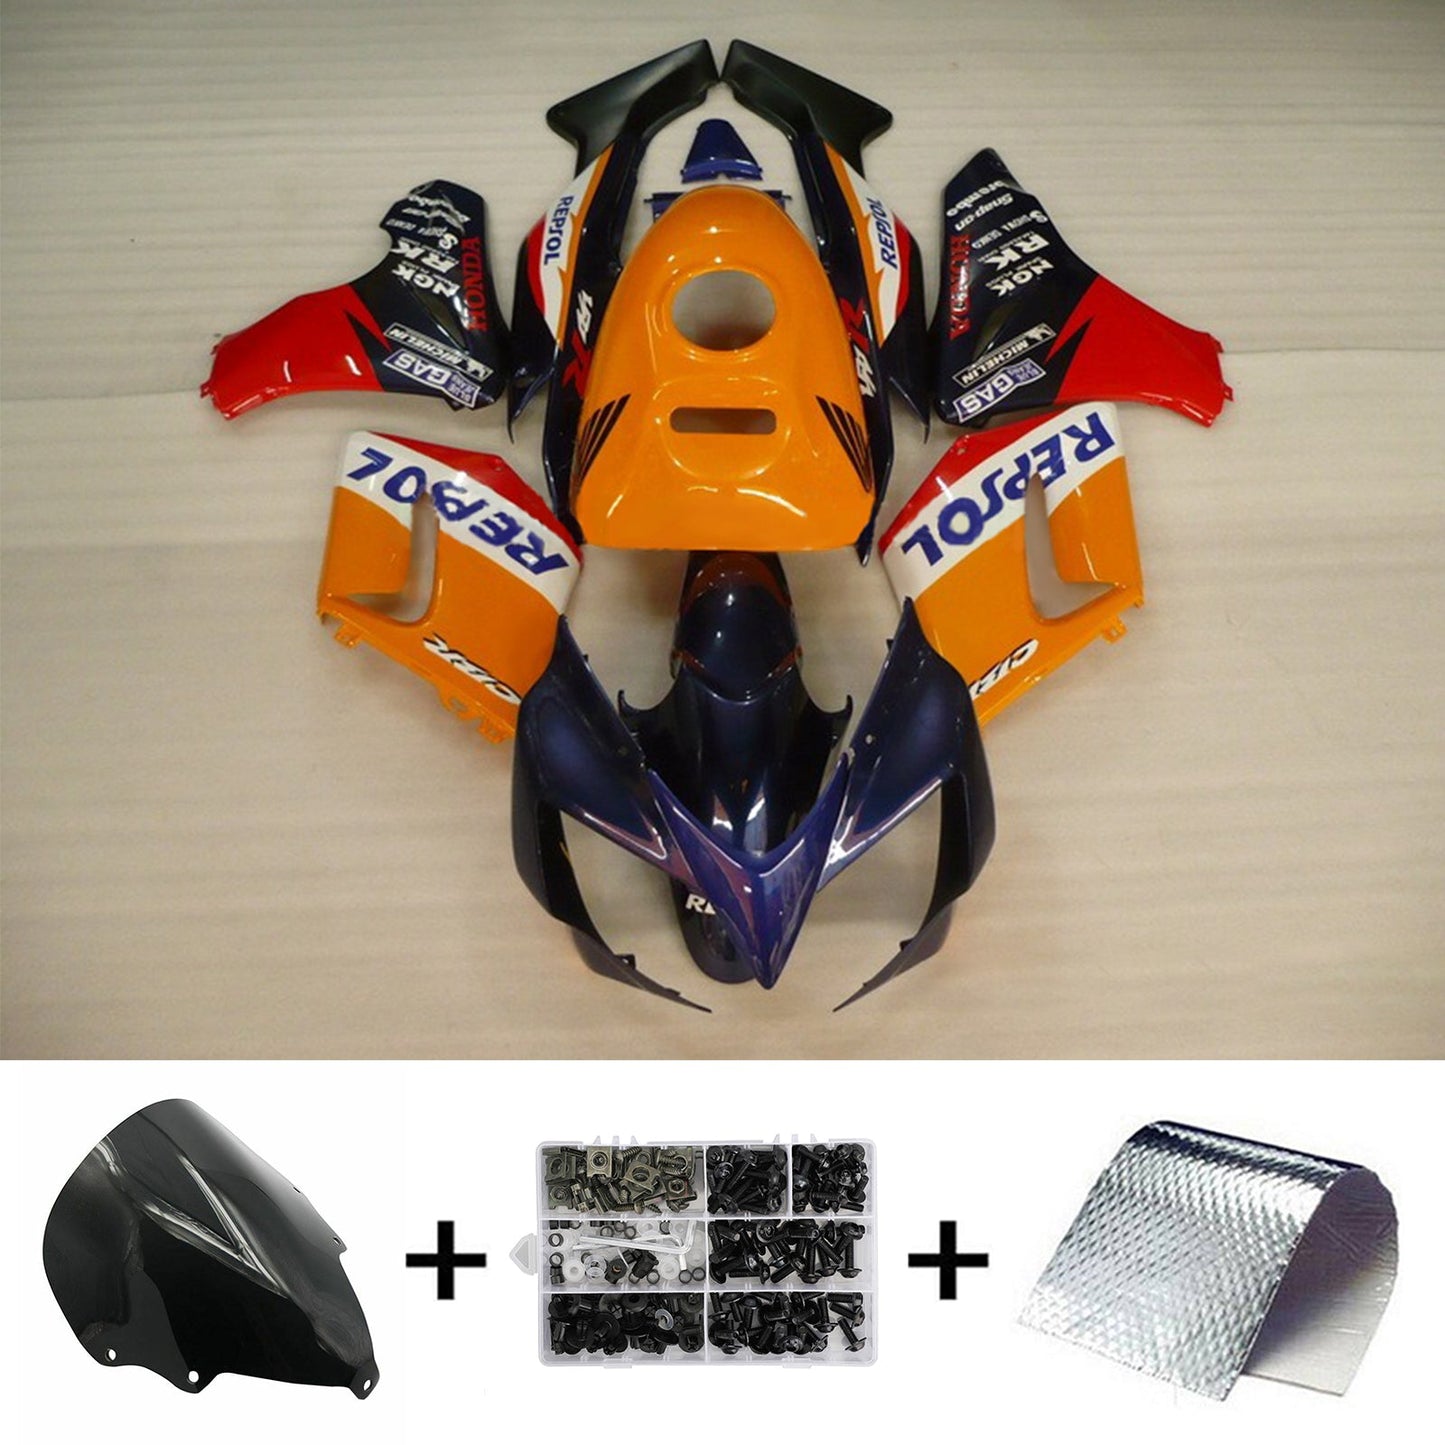 2002-2006 Honda CBR125R Amotopart Injection Fairing Kit Bodywork Plastic ABS #101